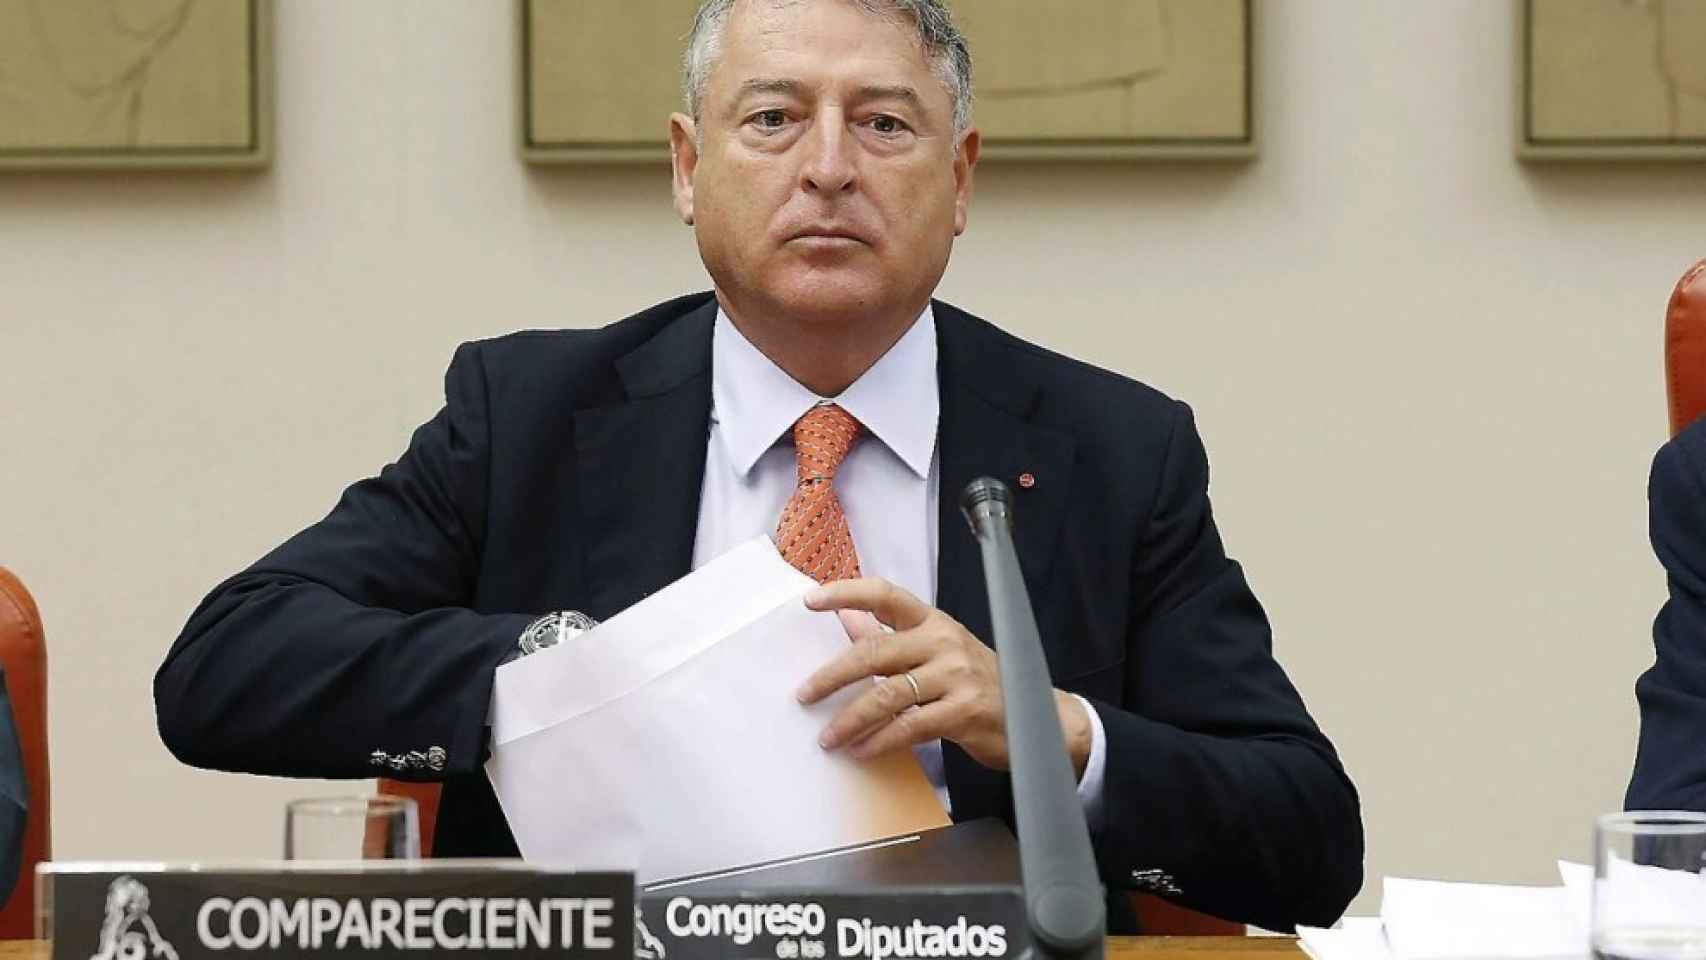 El presidente de RTVE, José Antonio Sánchez, cobró 200.000 euros en 2016